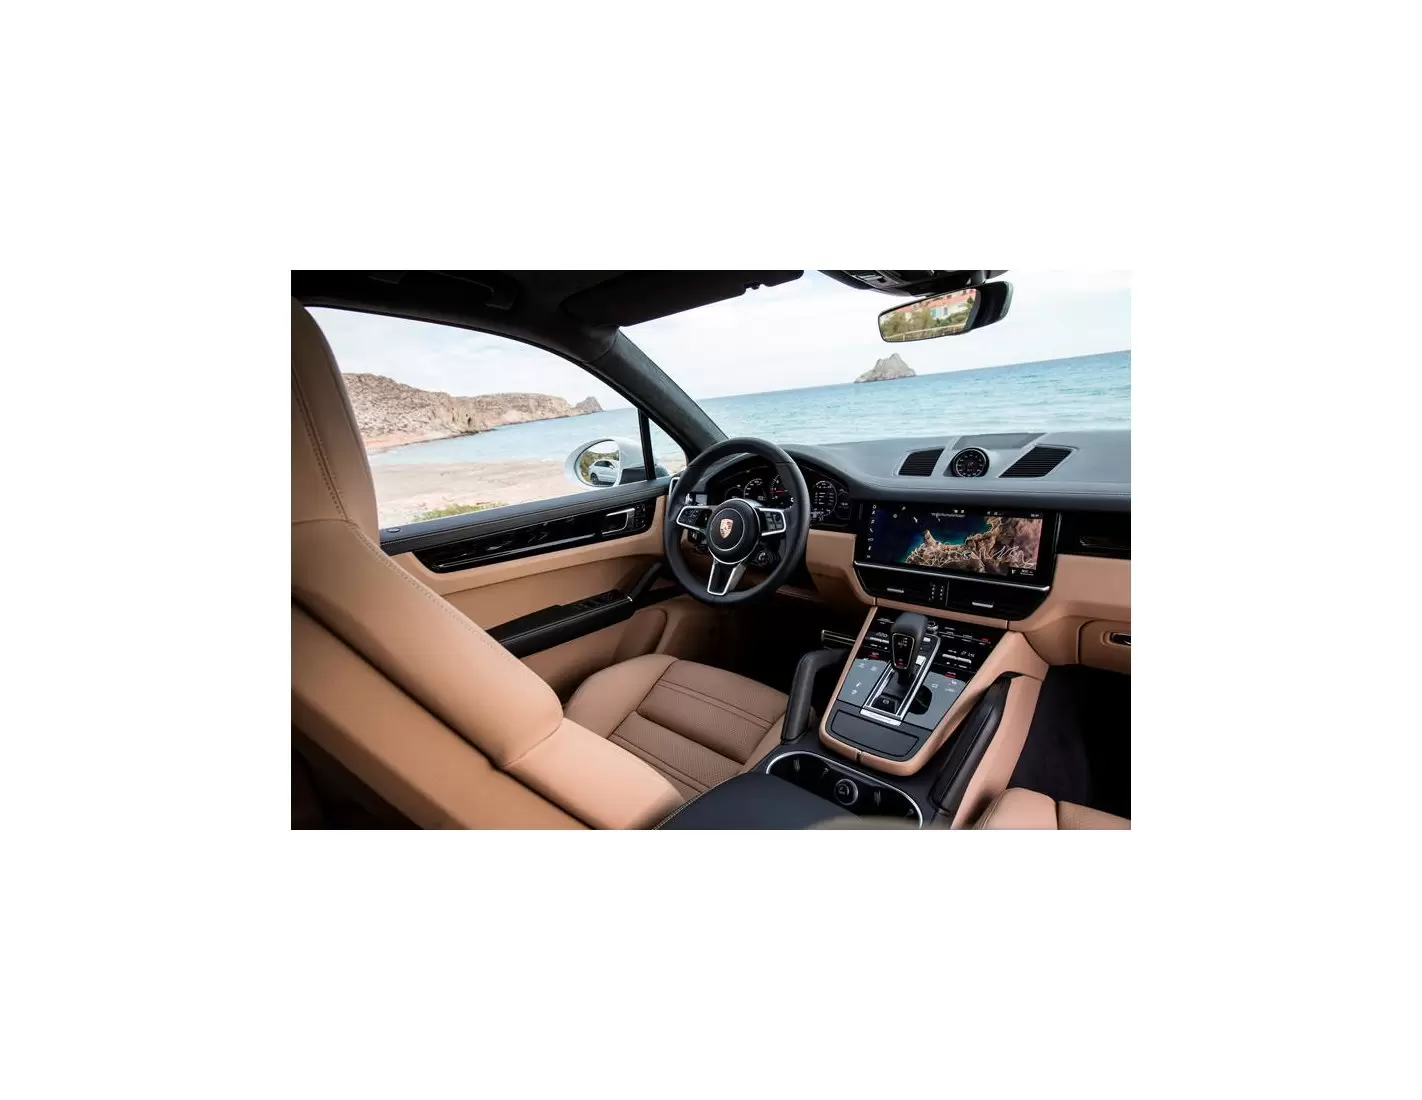 Porsche Cayenne 2018 9Y0 / 9Y3 3D Interior Dashboard Trim Kit Dash Trim Dekor 17-Parts